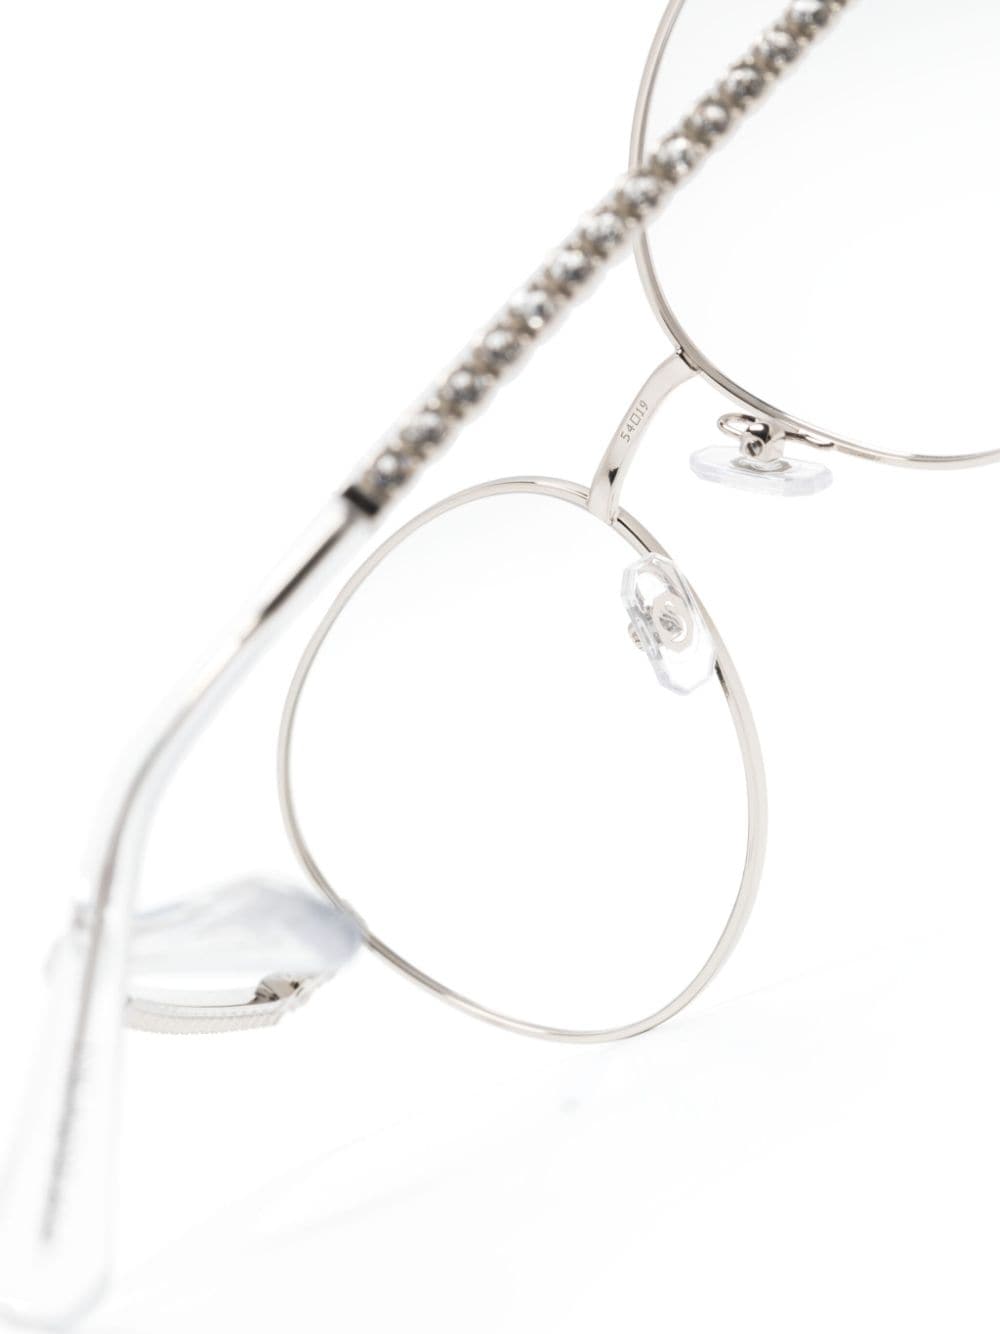 Shop Swarovski Crystal-embellished Round-frame Glasses In Silver